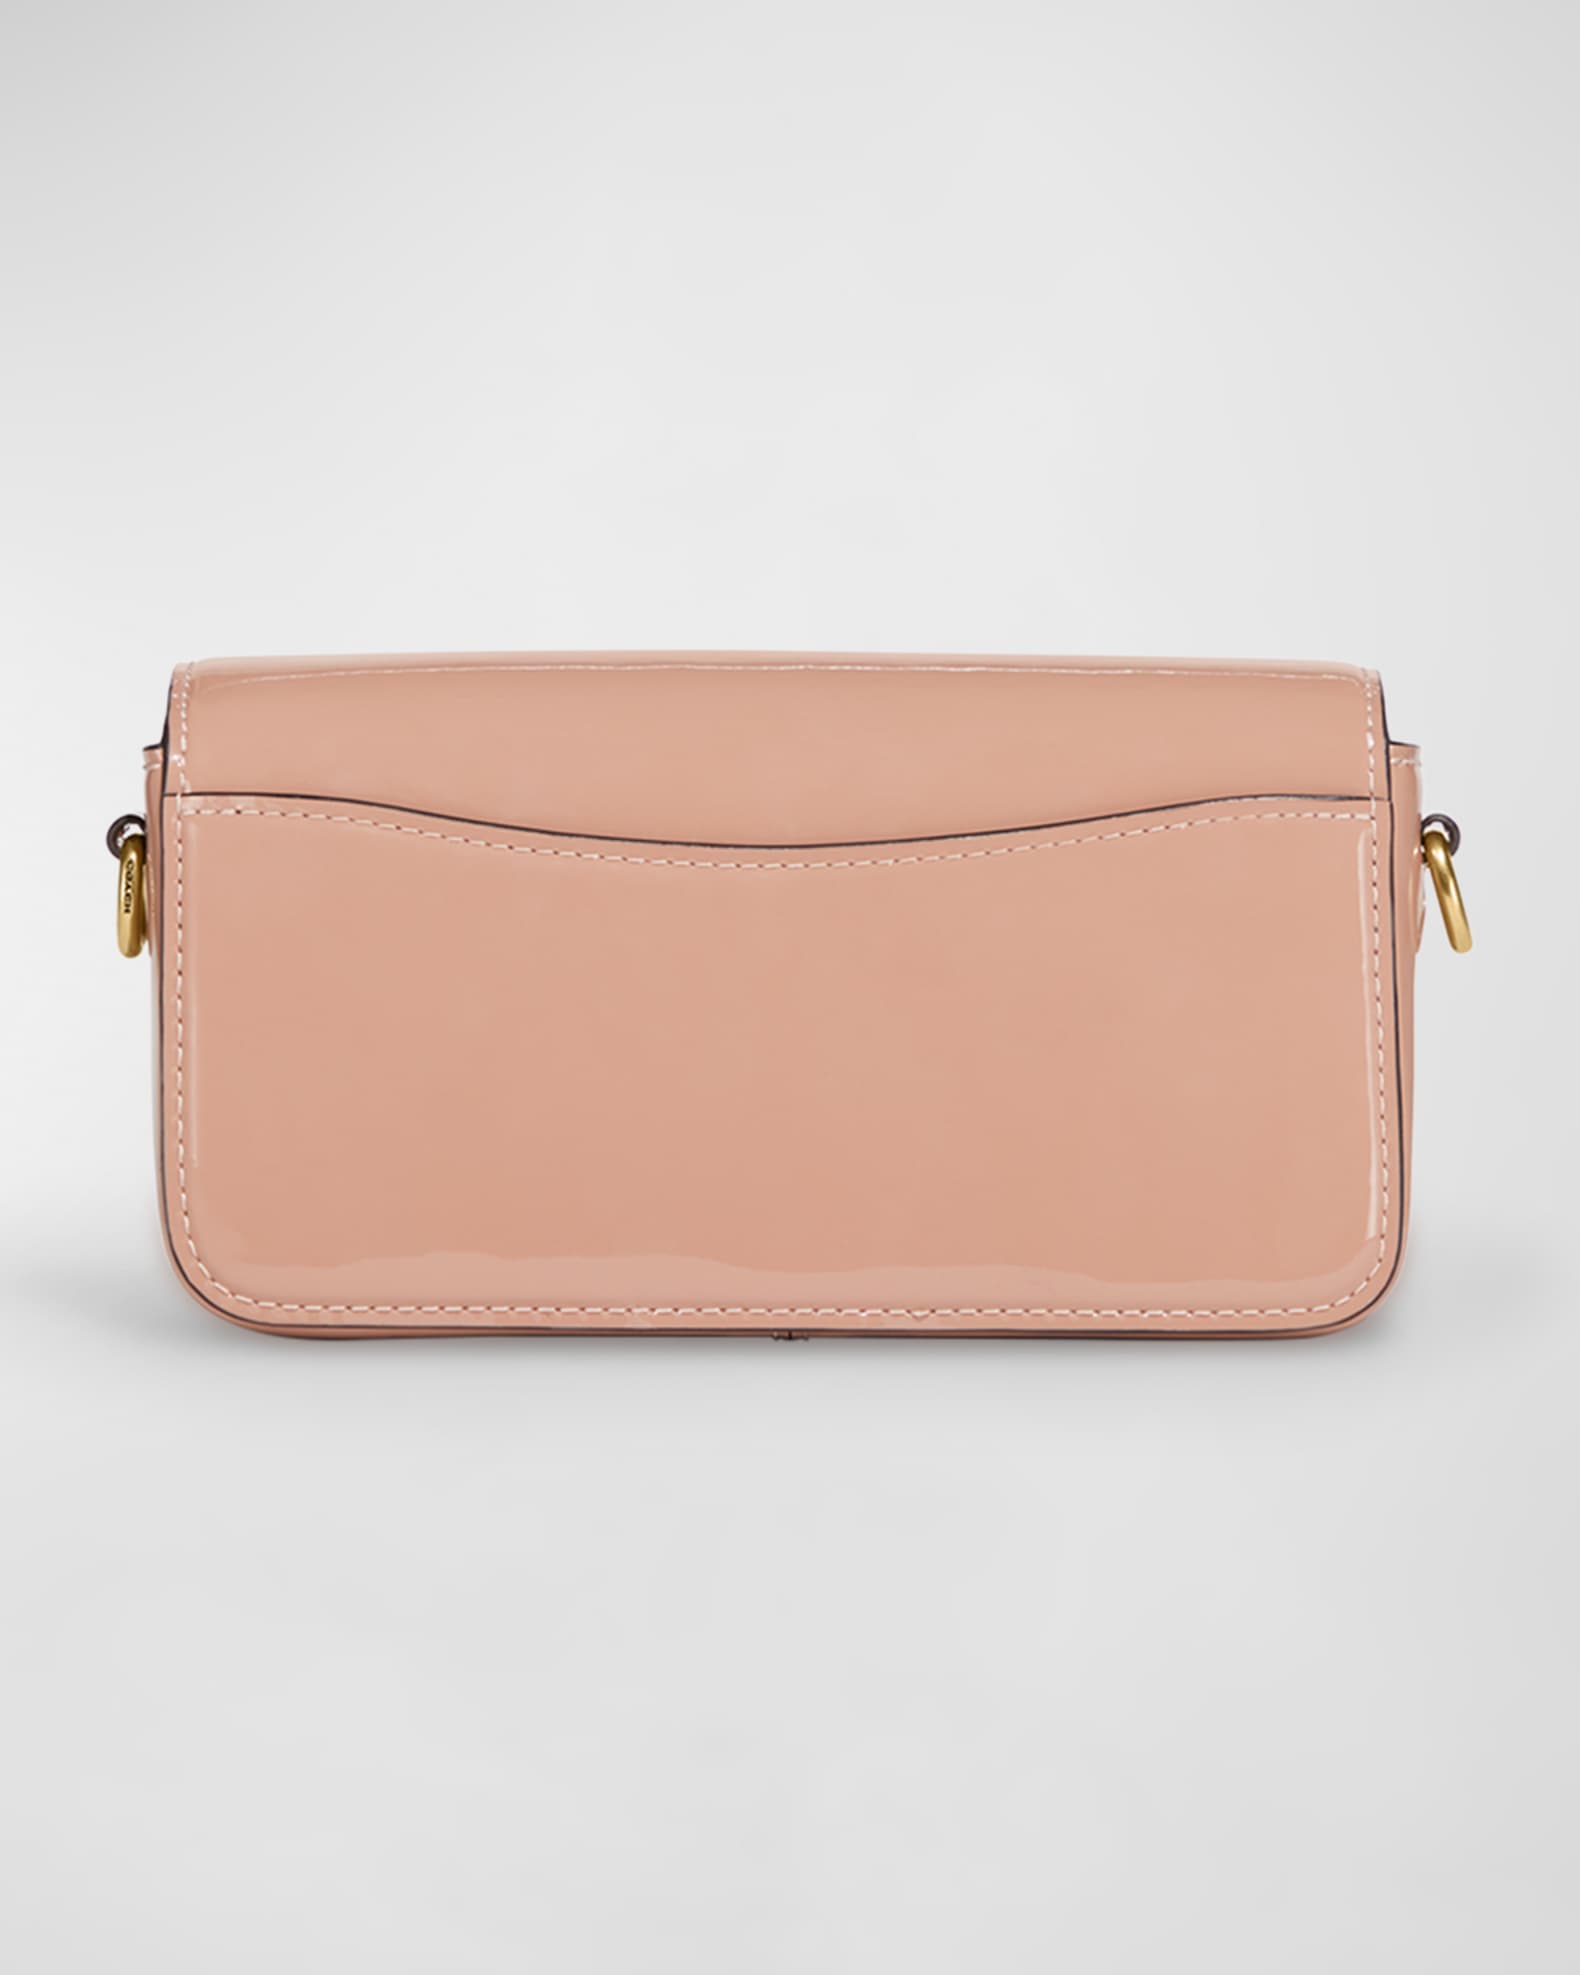 Coach Studio Flap Patent Leather Shoulder Bag | Neiman Marcus